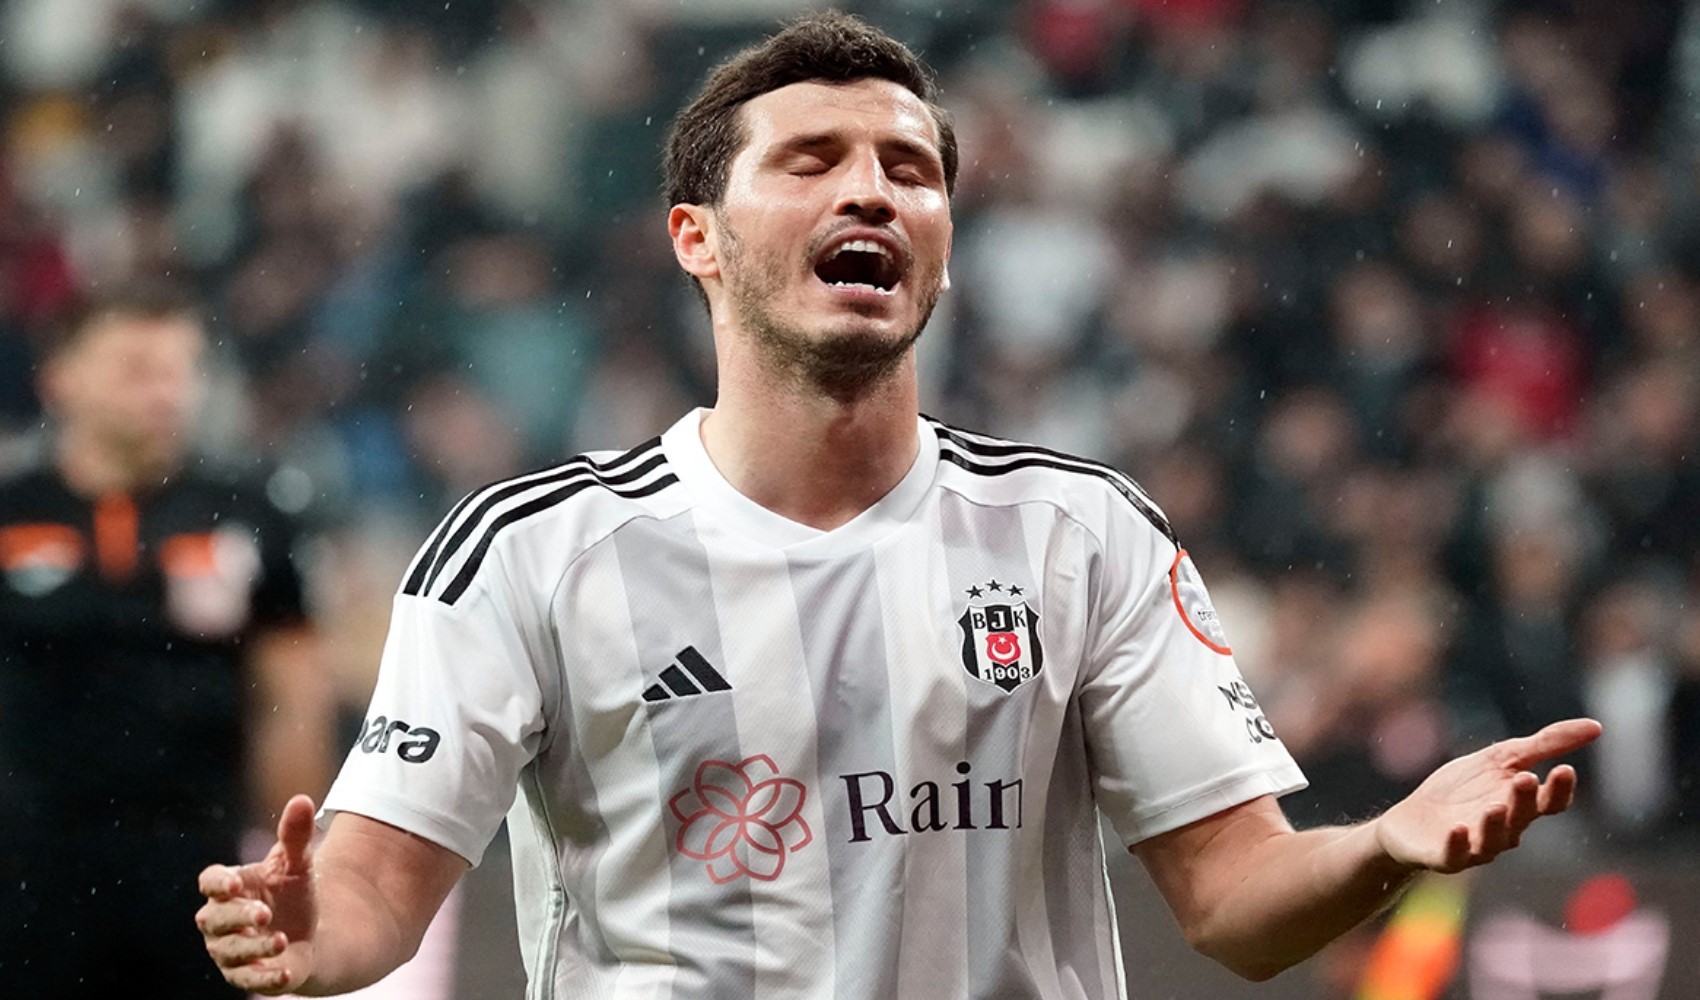 Salih Uçan Beşiktaş'tan ayrılıyor mu? Süper Lig'den teklif